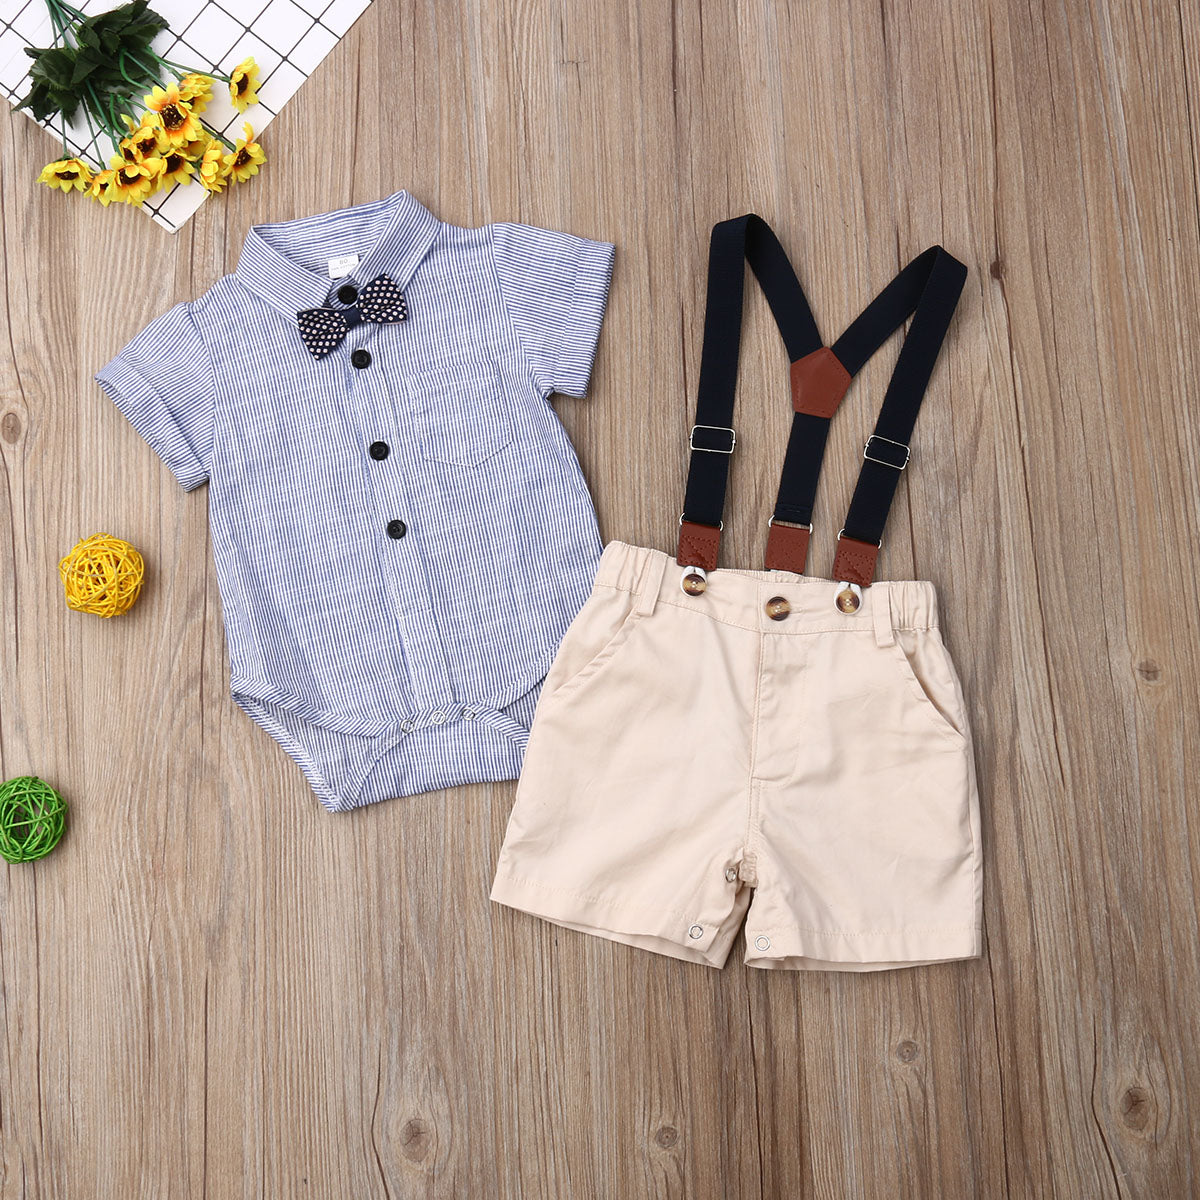 Baby Boy Summer 2PCS  Gentleman Shirt + Shorts